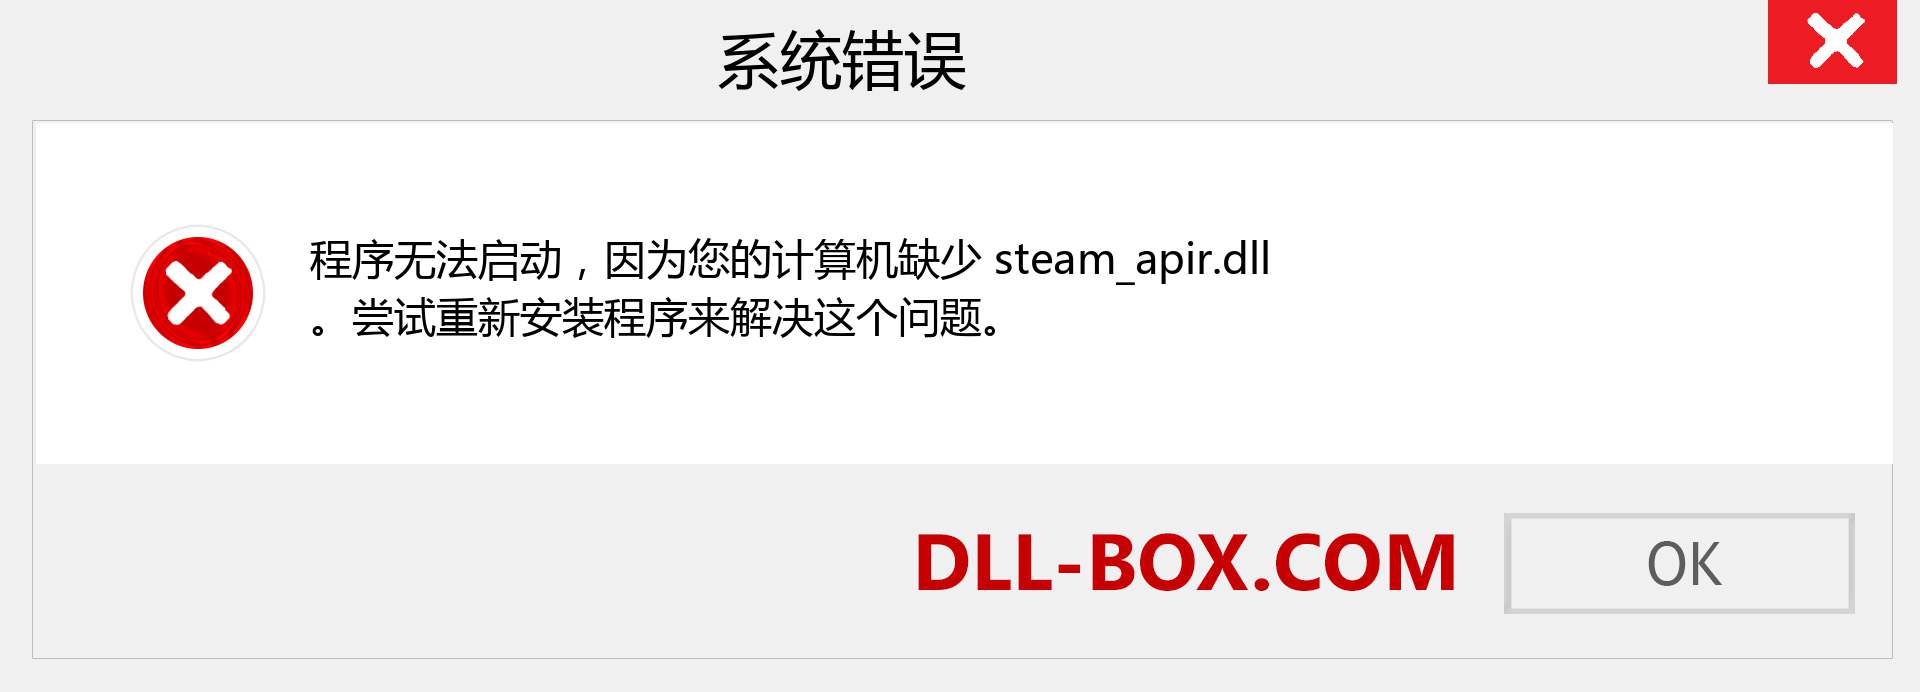 steam_apir.dll 文件丢失？。 适用于 Windows 7、8、10 的下载 - 修复 Windows、照片、图像上的 steam_apir dll 丢失错误